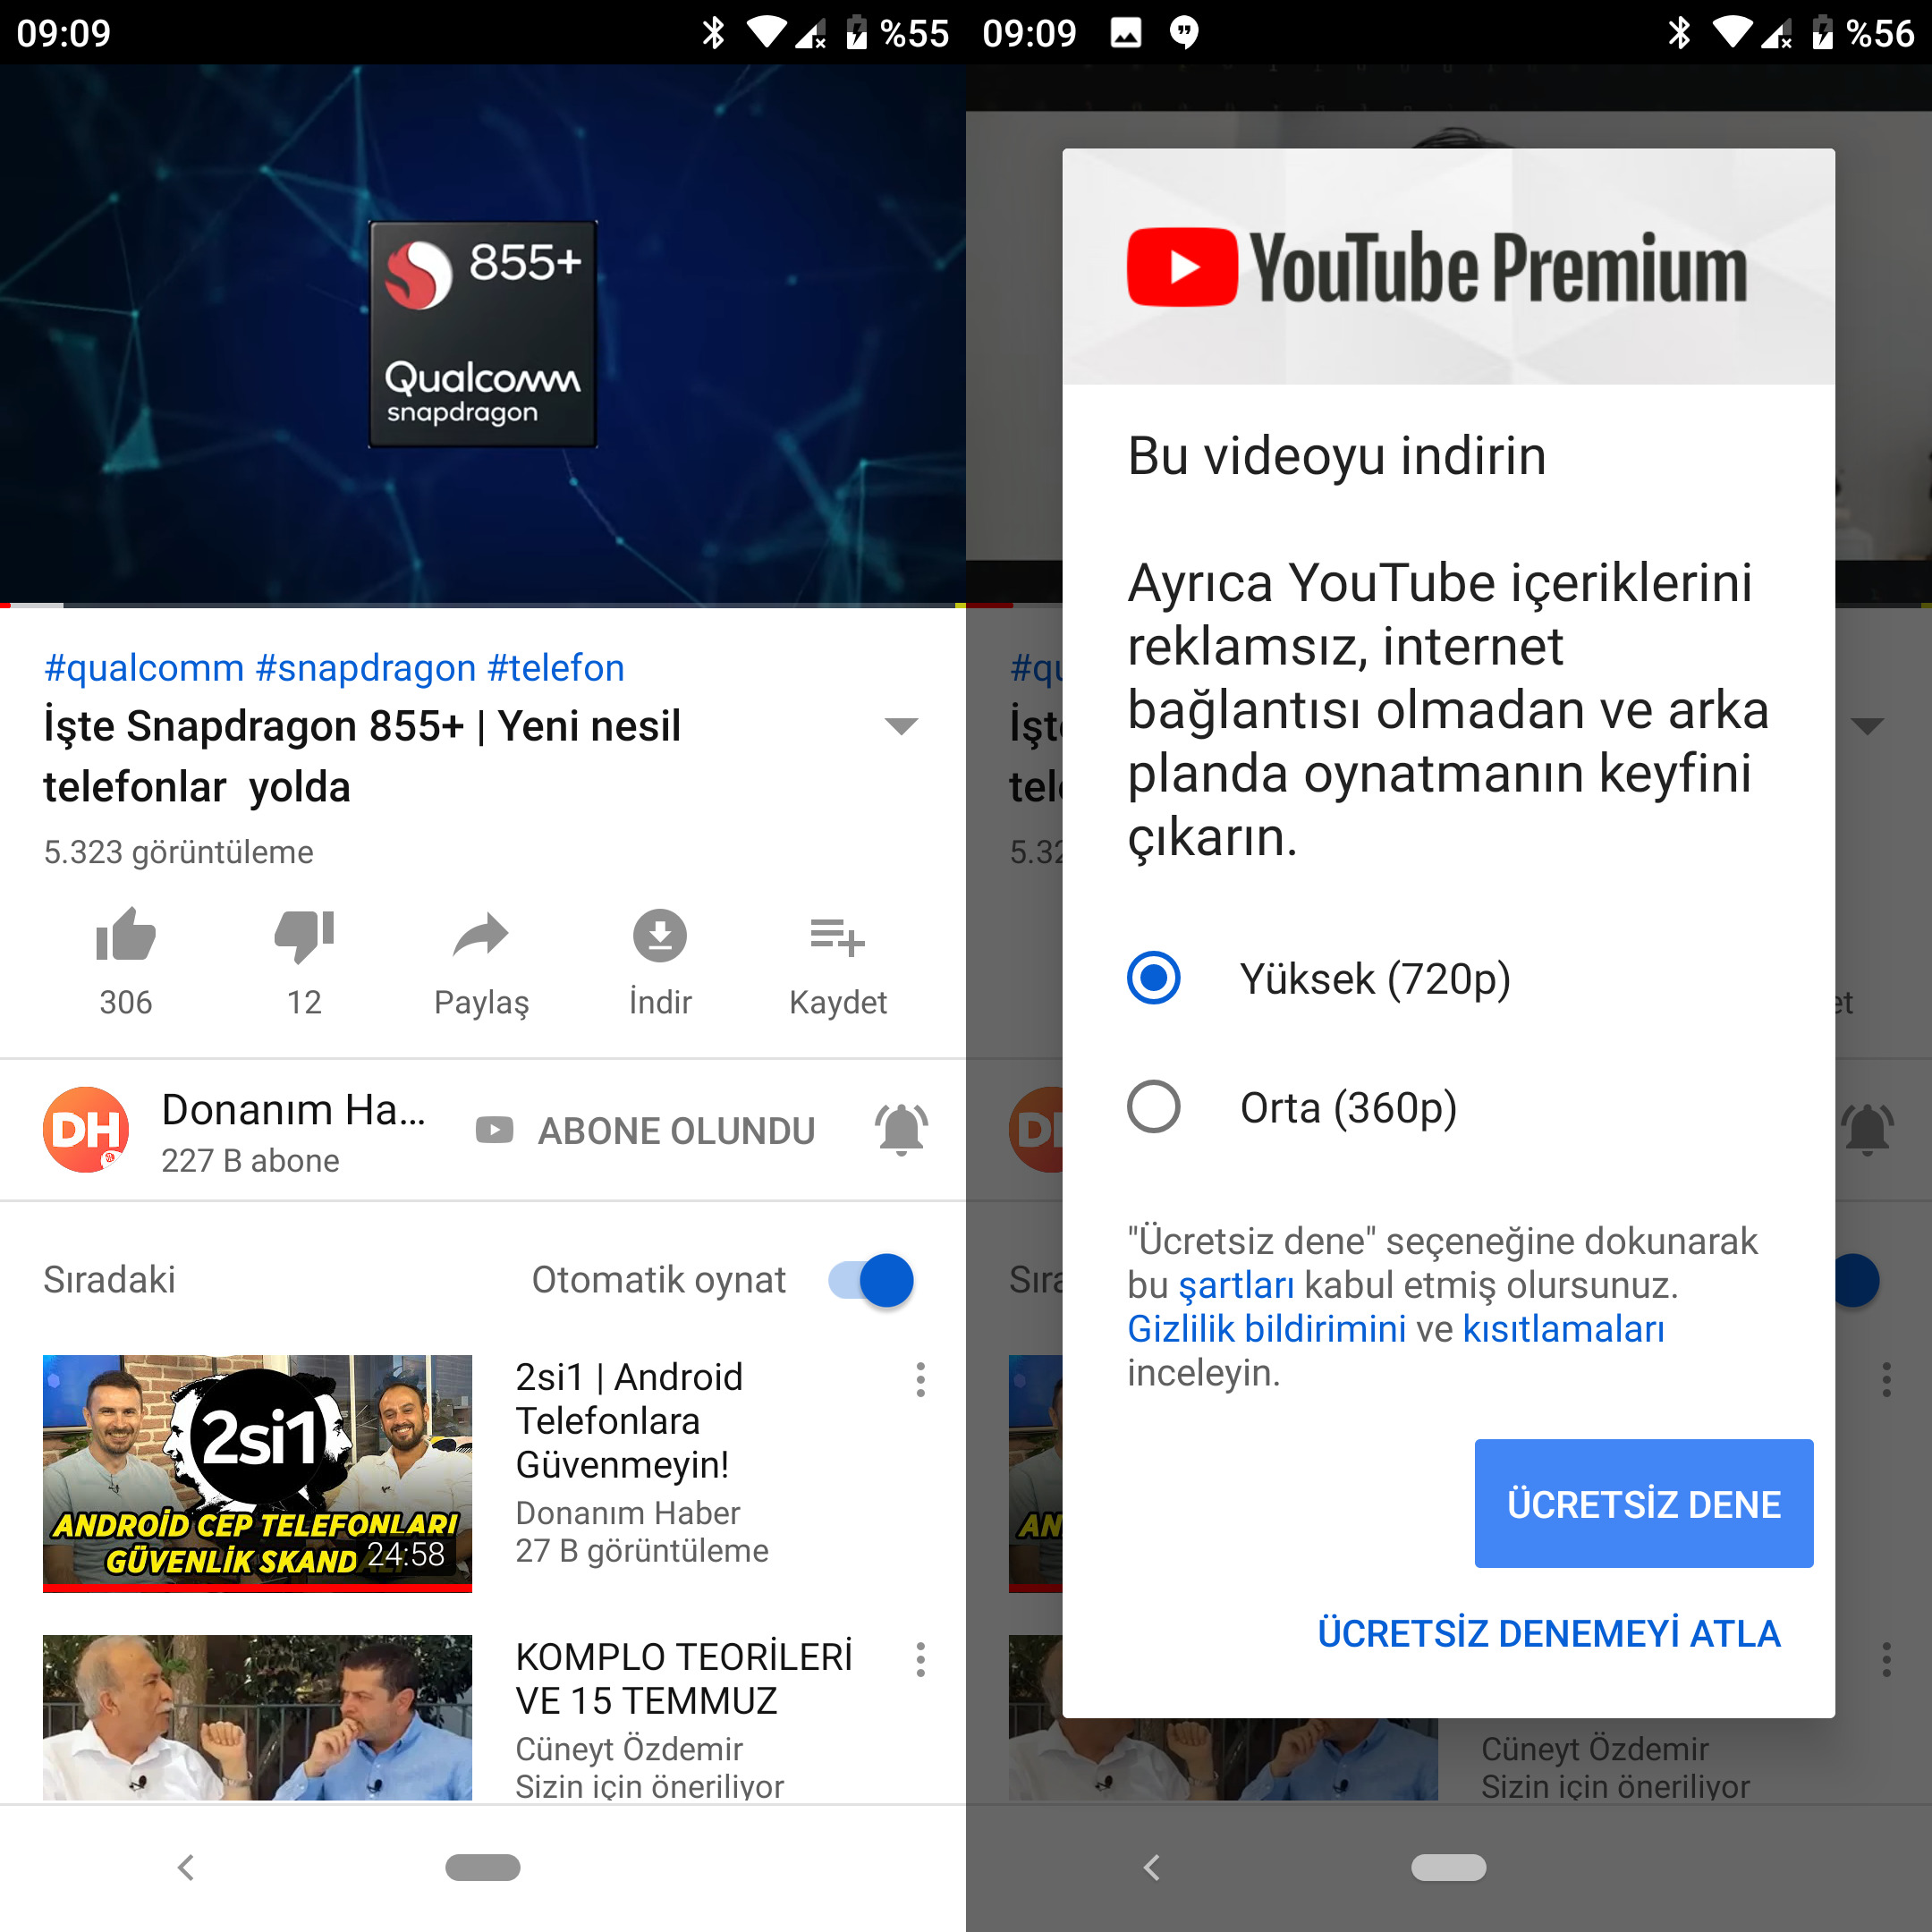 YouTube Premium Türkiye’ye açıldı!